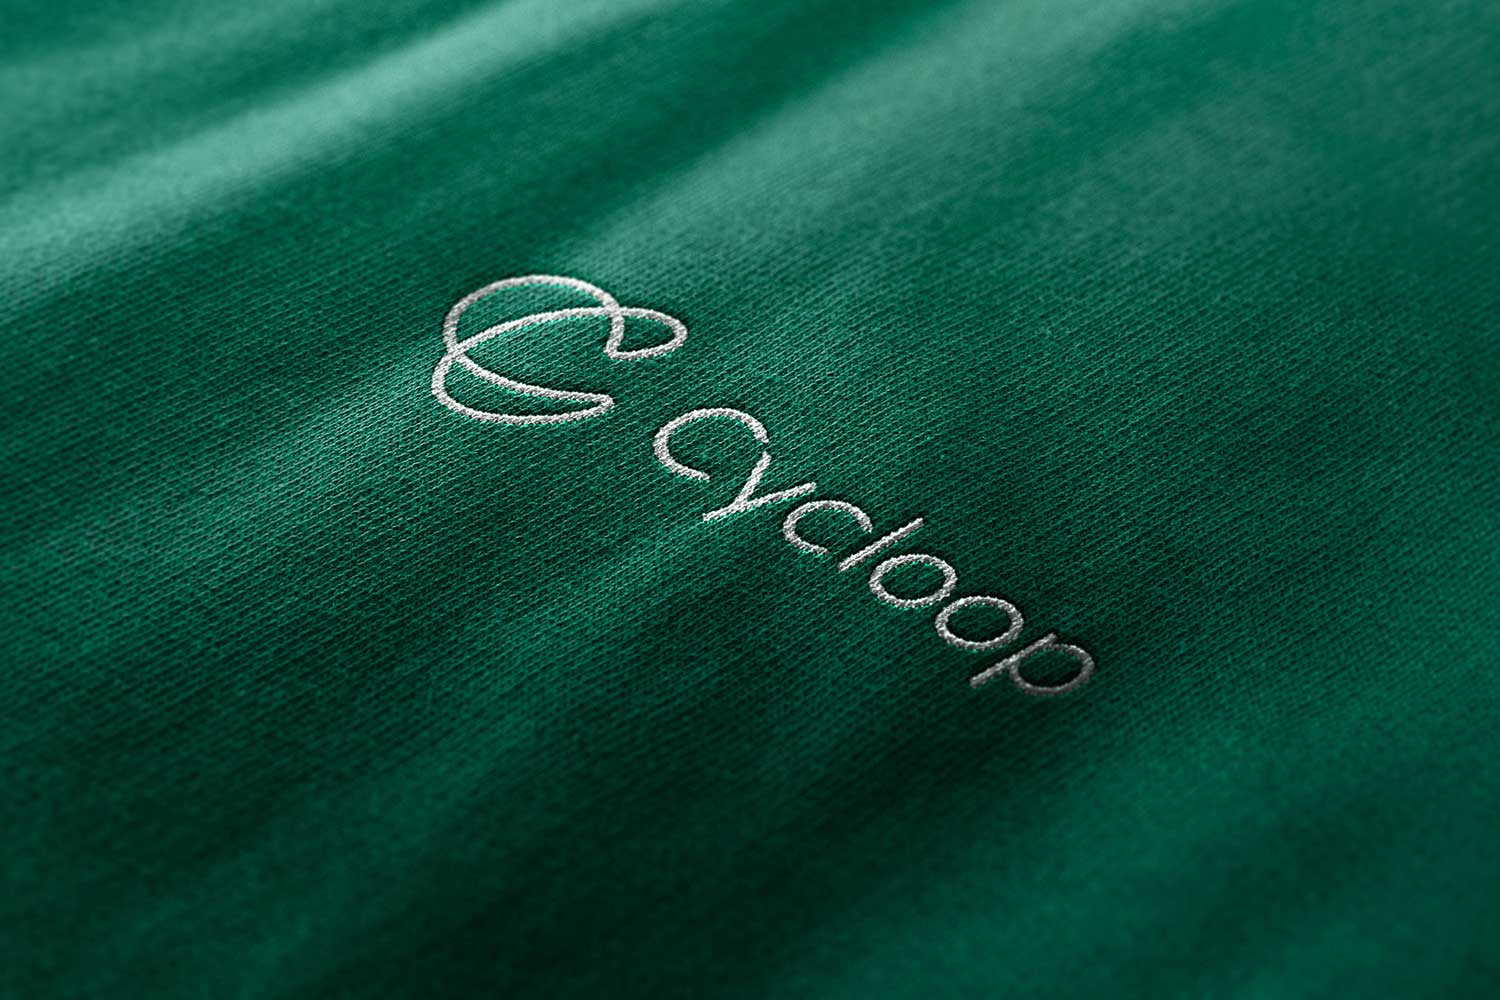 Logo e brand identity di Cycloop realizzato da SEBA! grafico di Gravellona Toce nel VCO del logo ricamato in bianco su sfondo verde